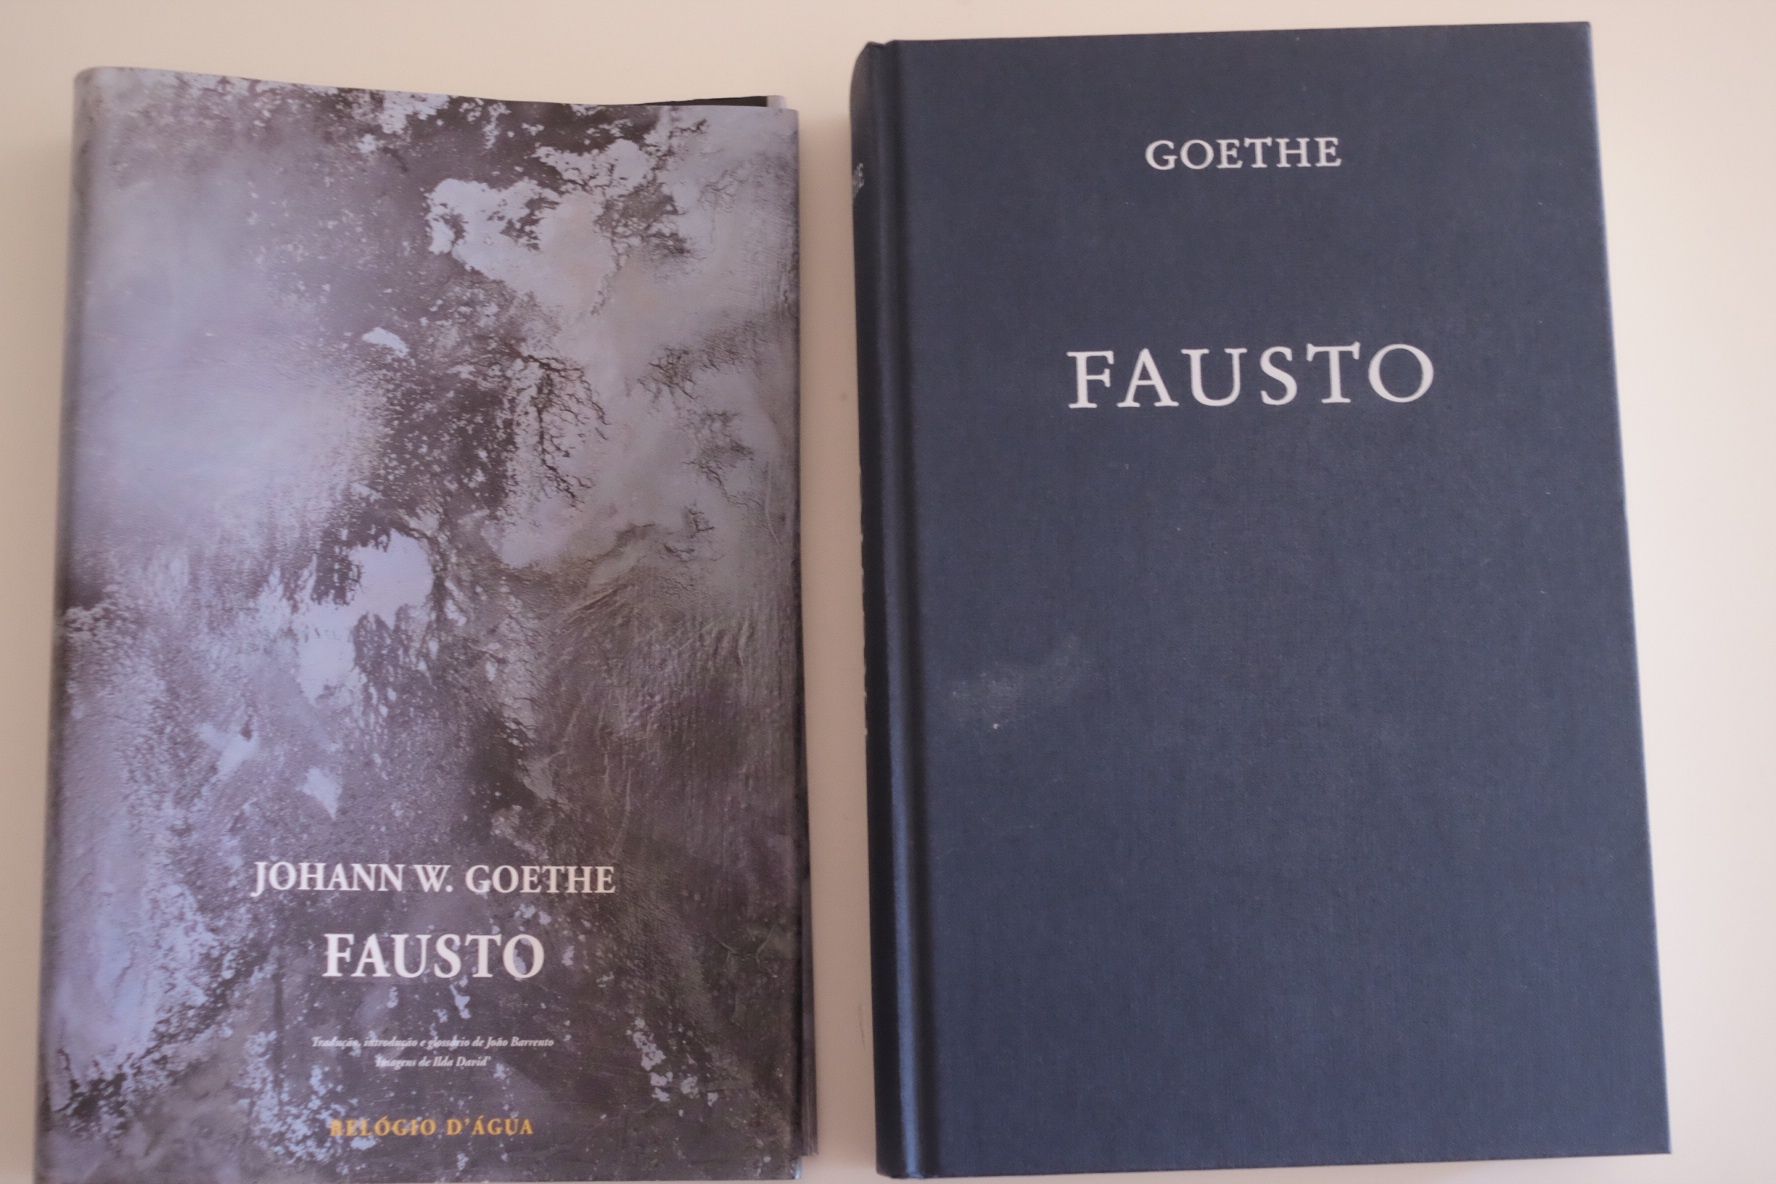 Goethe, "Fausto "